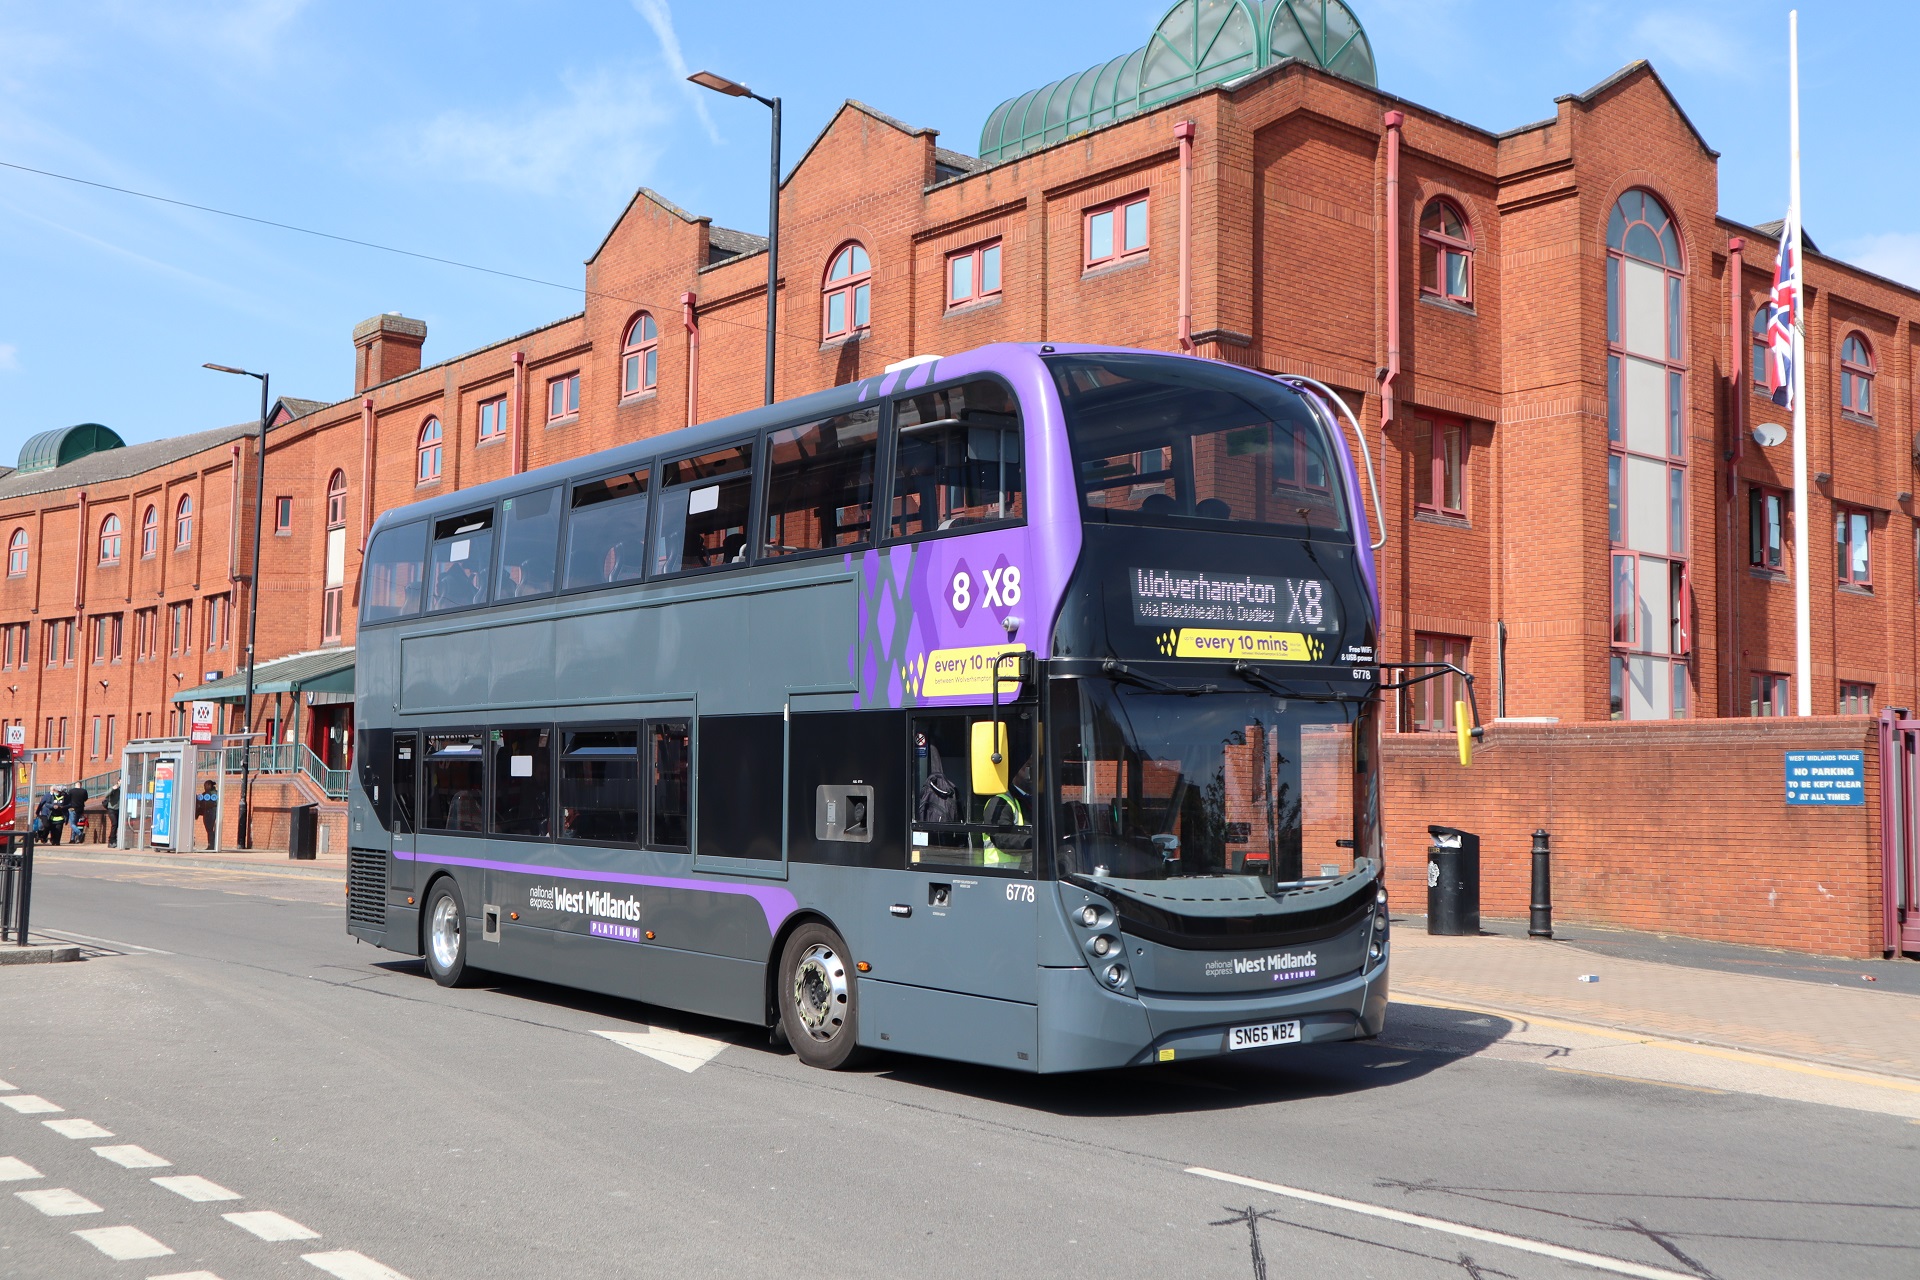 Over 130 bus operators to participate in £2 fare cap grant scheme